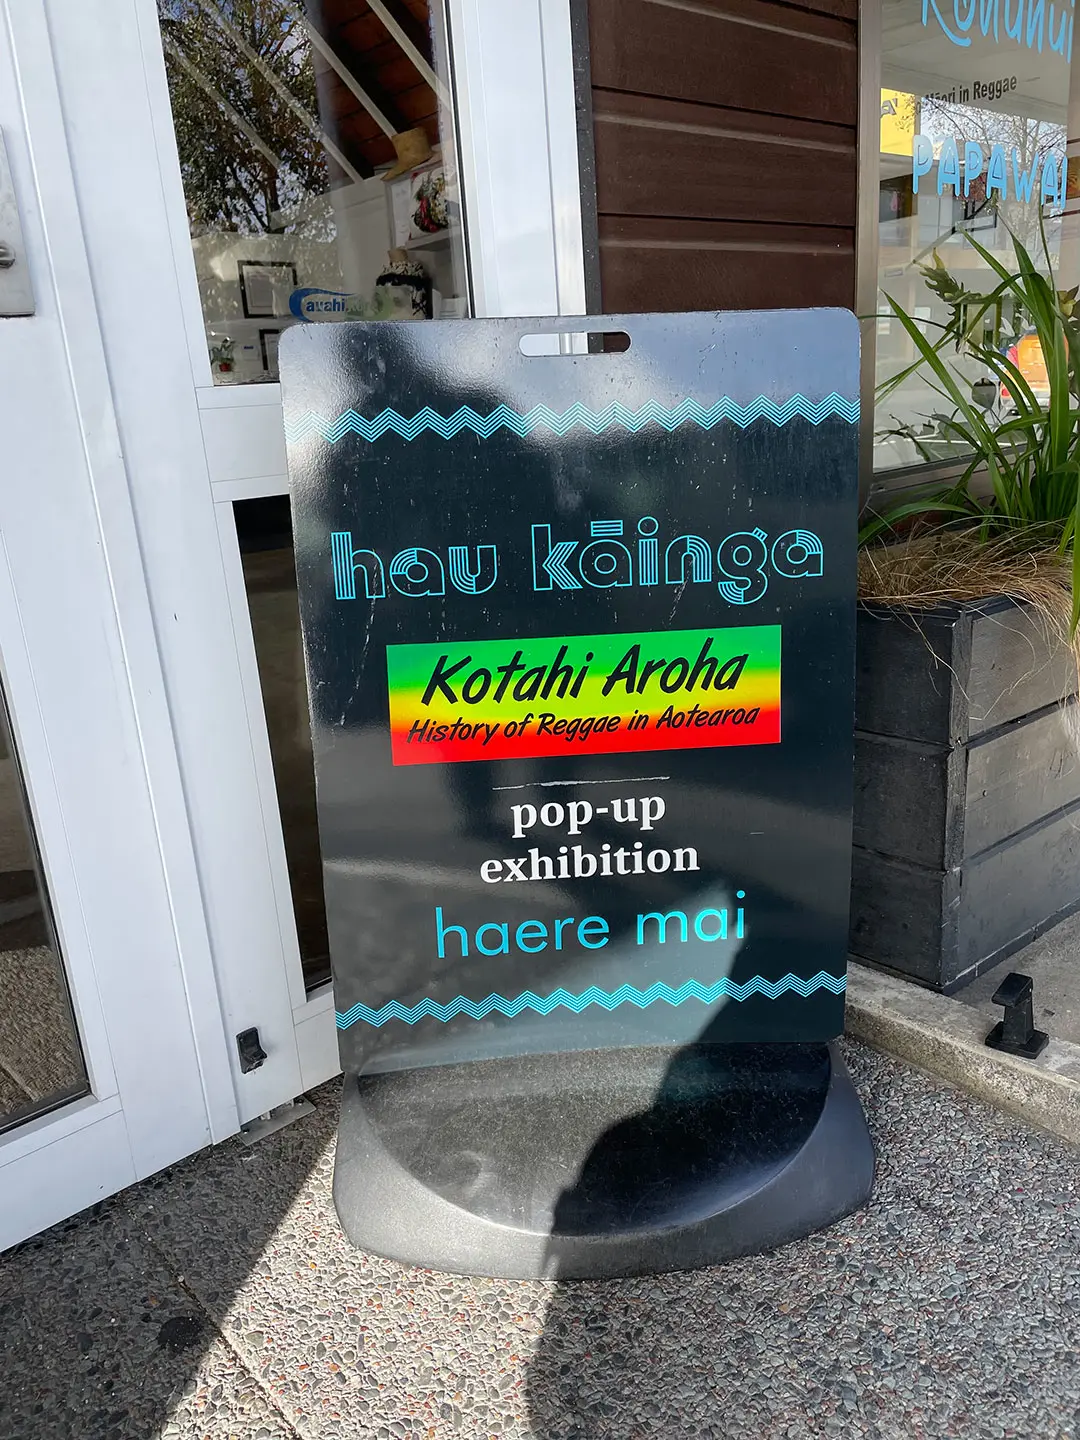 Welcome to Hau Kainga enjoy our pop-up exhibition Kotahi Aroha